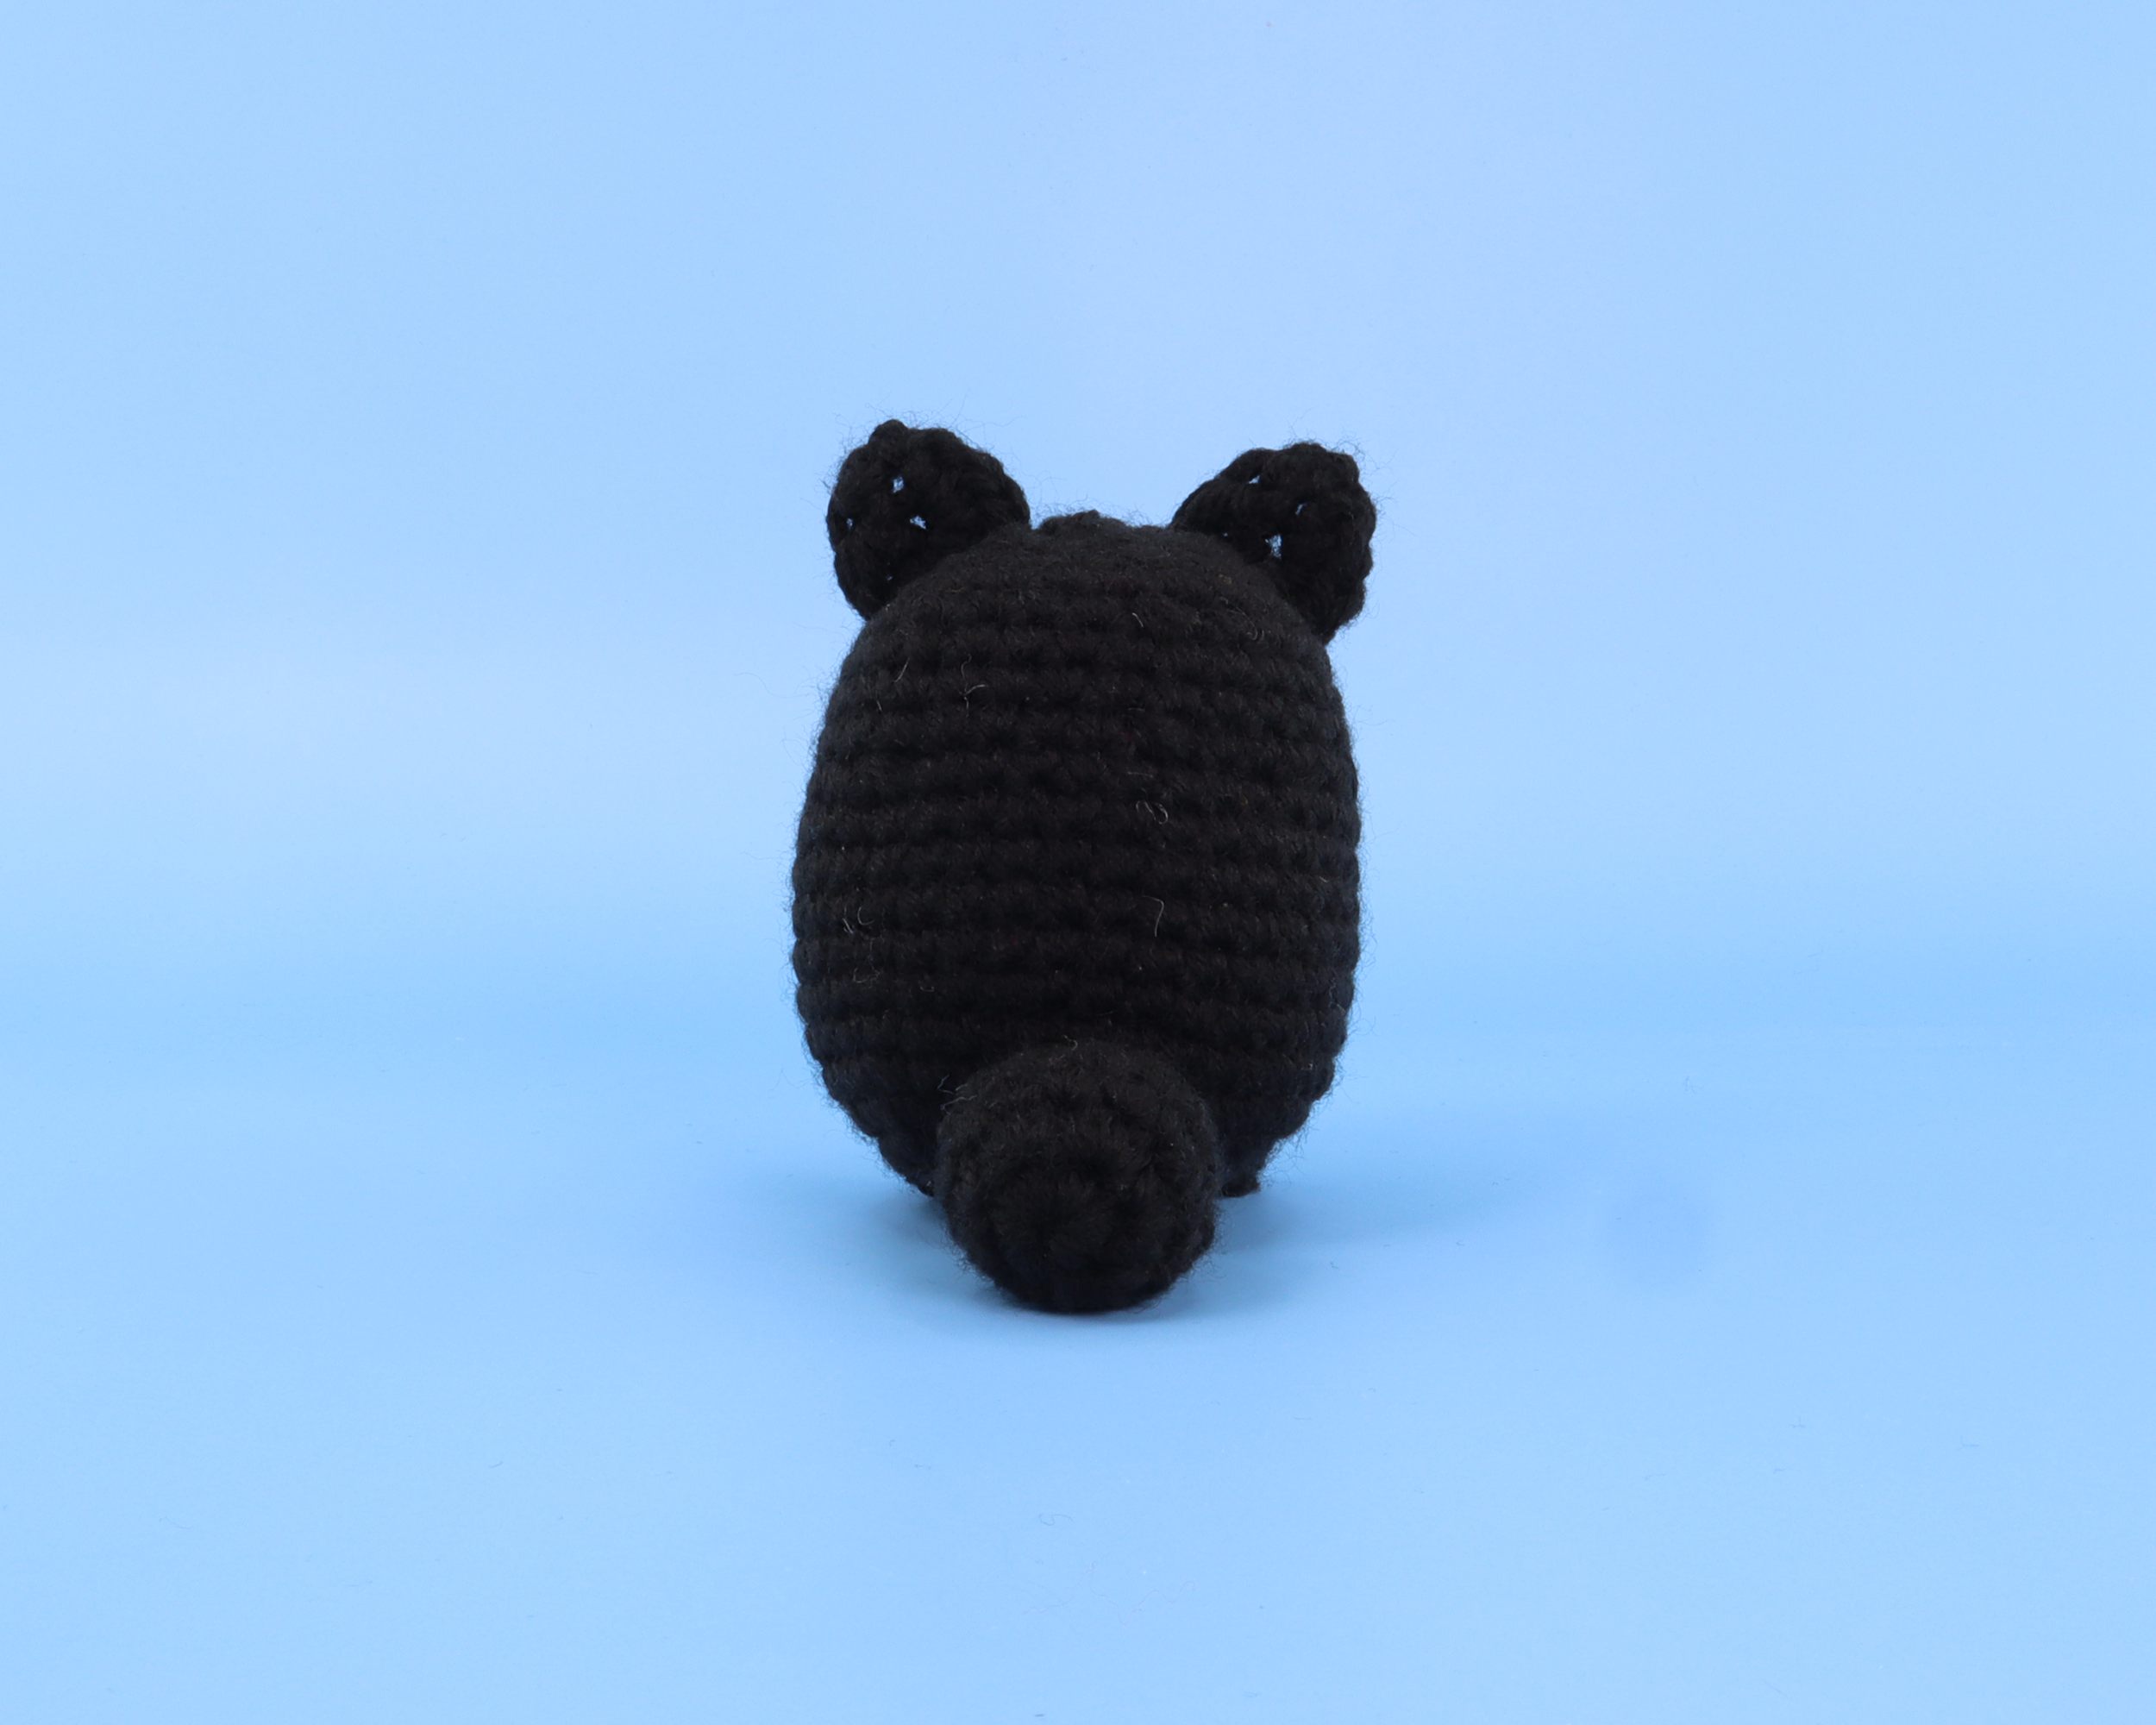 Noir The Black Cat Crochet Kit